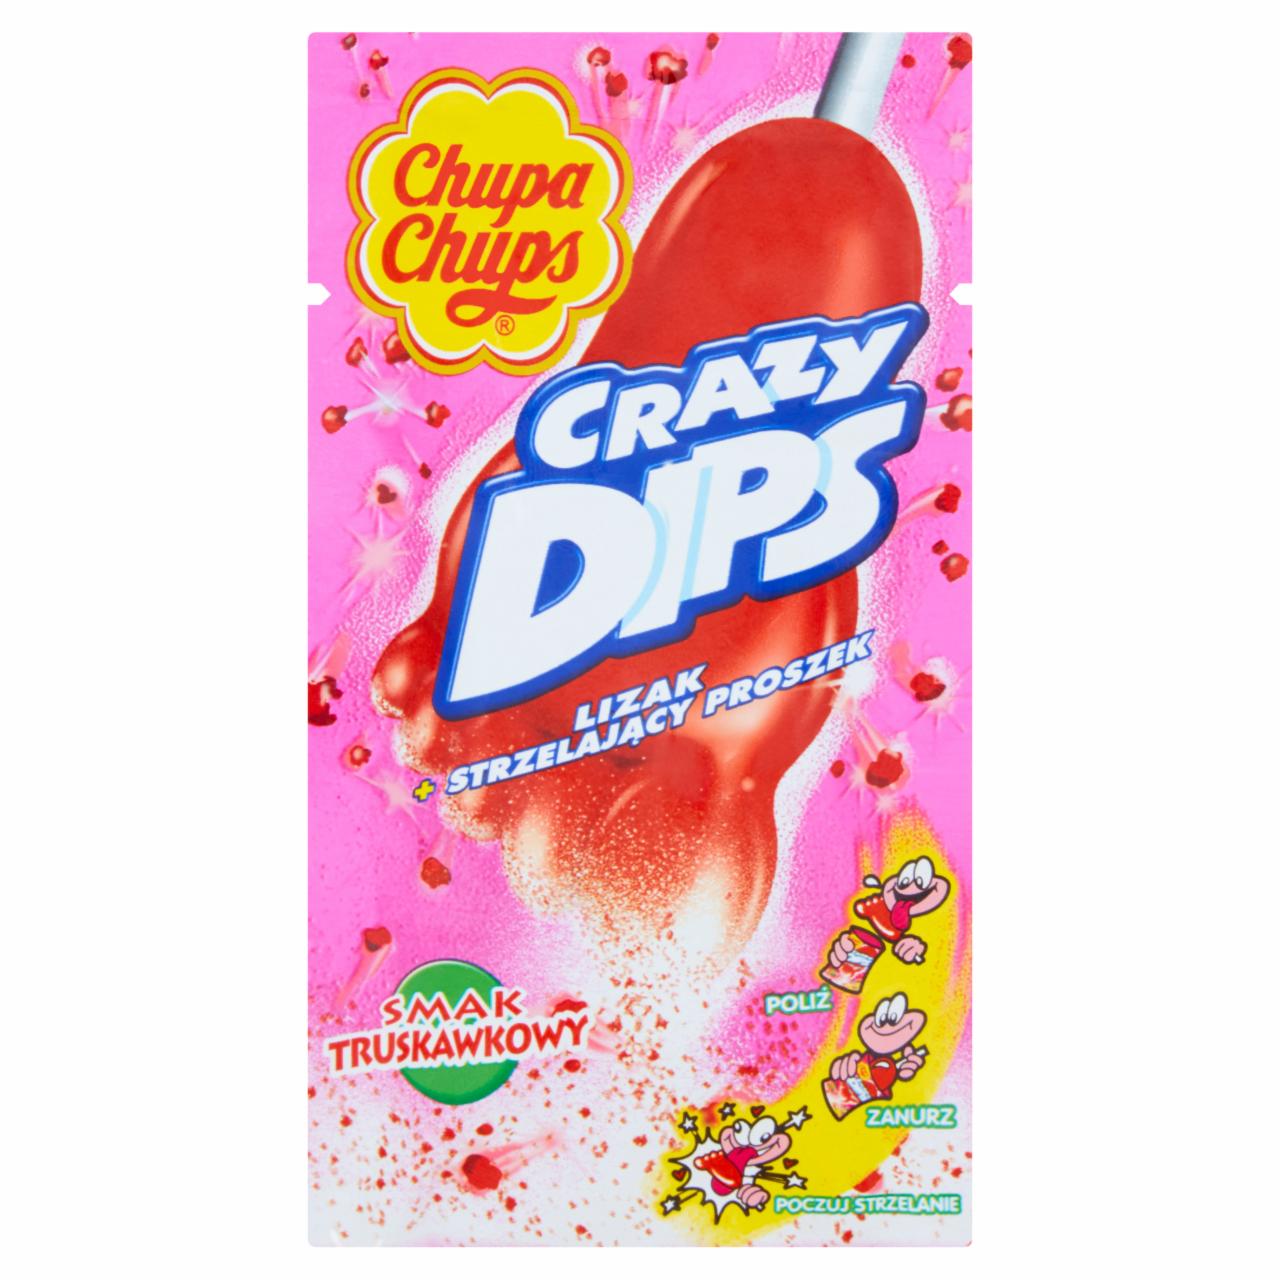 Zdjęcia - Chupa Chups Crazy Dips Lizak ze strzelającym proszkiem smak truskawkowy 14 g